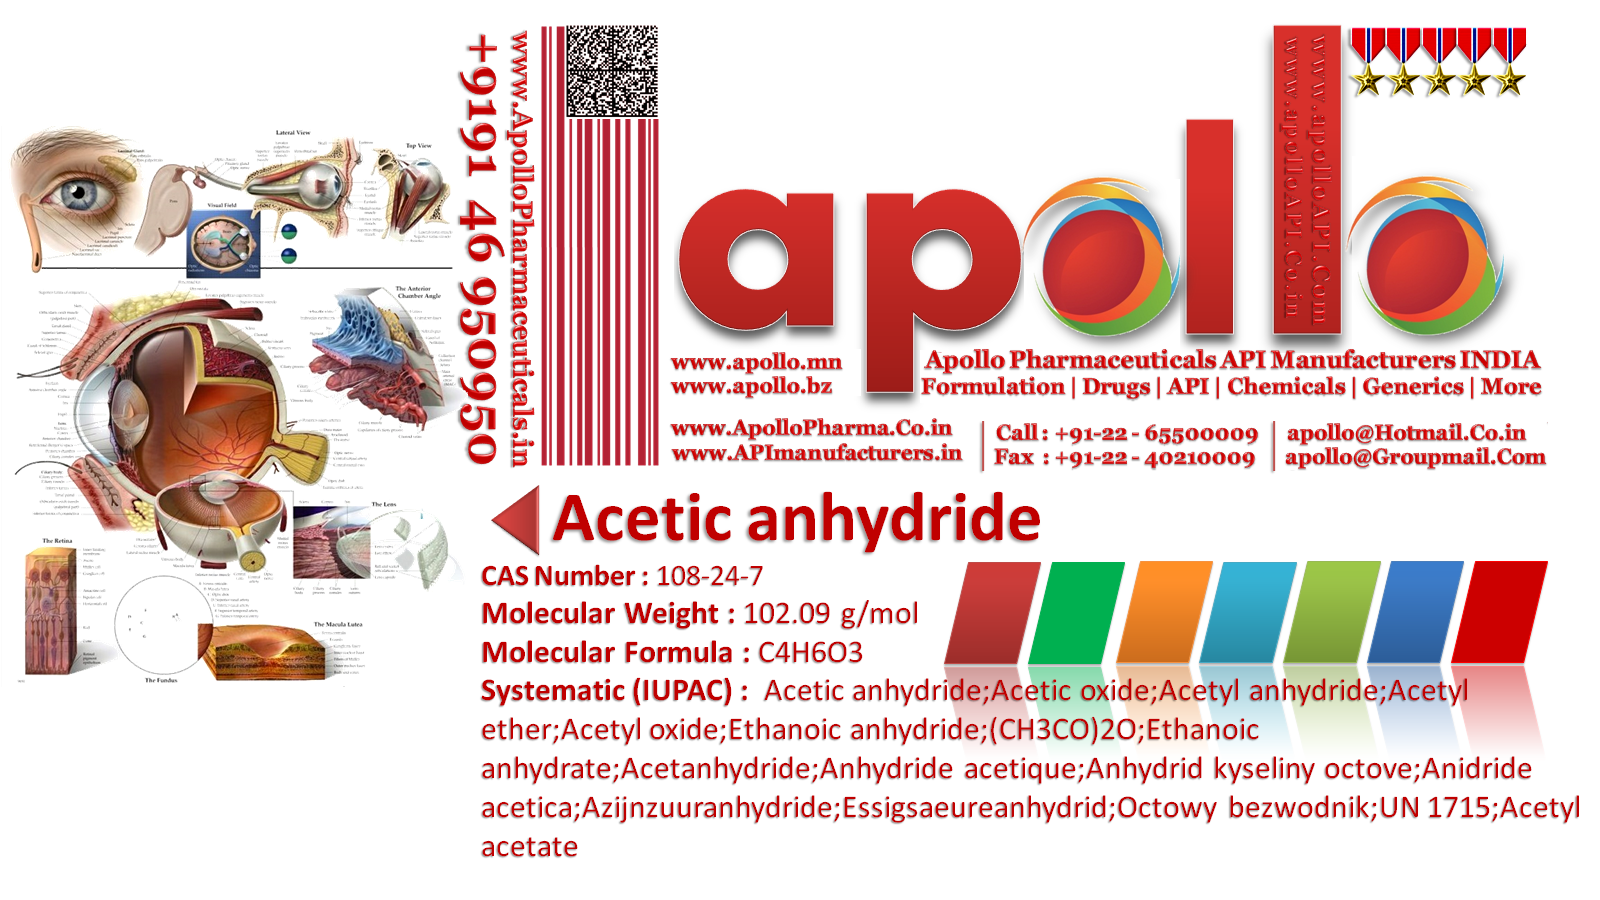 Apollo Pharmaceuticals Api Manufacturers India Pvt Ltd